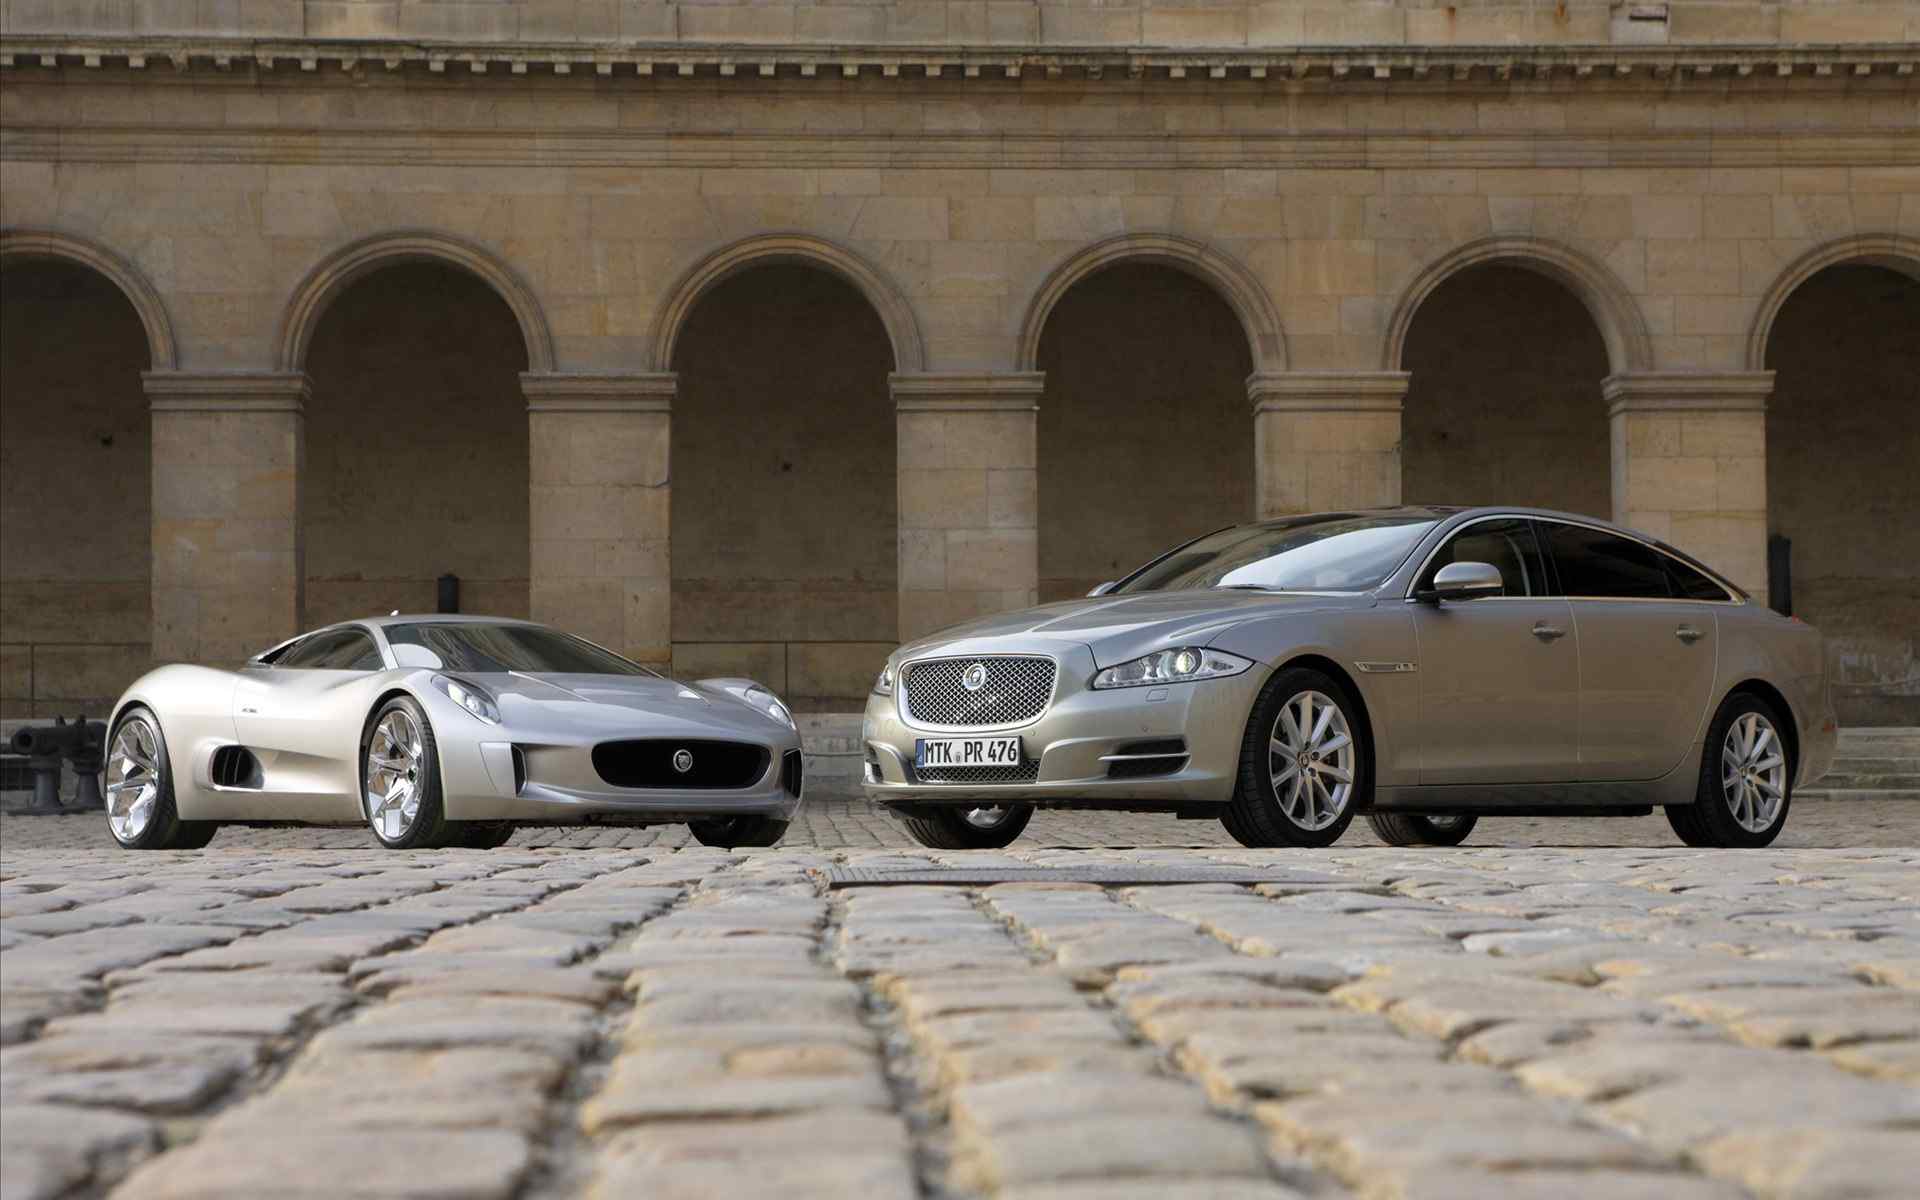 Jaguar捷豹三厢酷炫跑车汽车图片高清壁纸